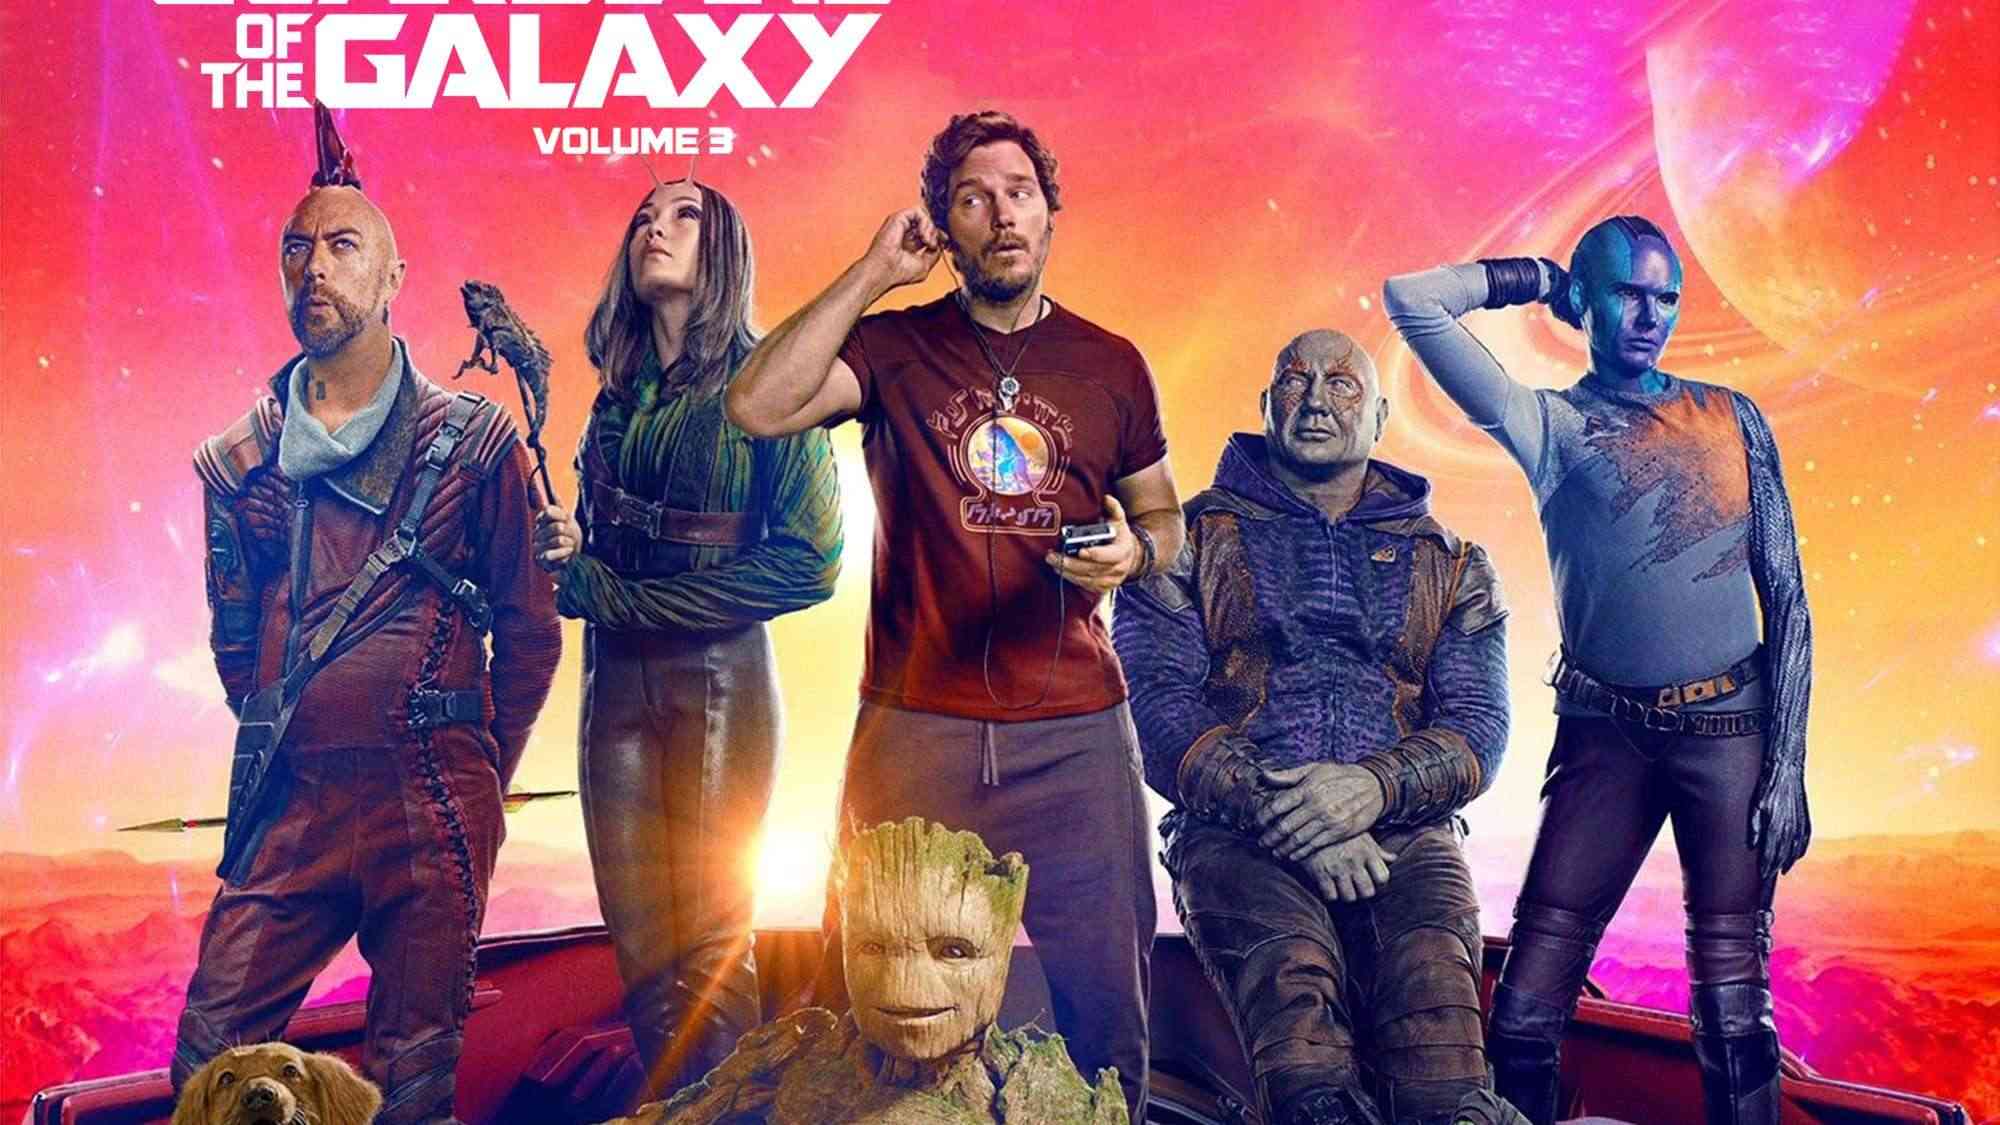 Guardians of the Galaxy Vol 3 nhận về nhiều đánh giá tích cực sau buổi công chiếu sớm, liệu nó có giúp vực dậy MCU?